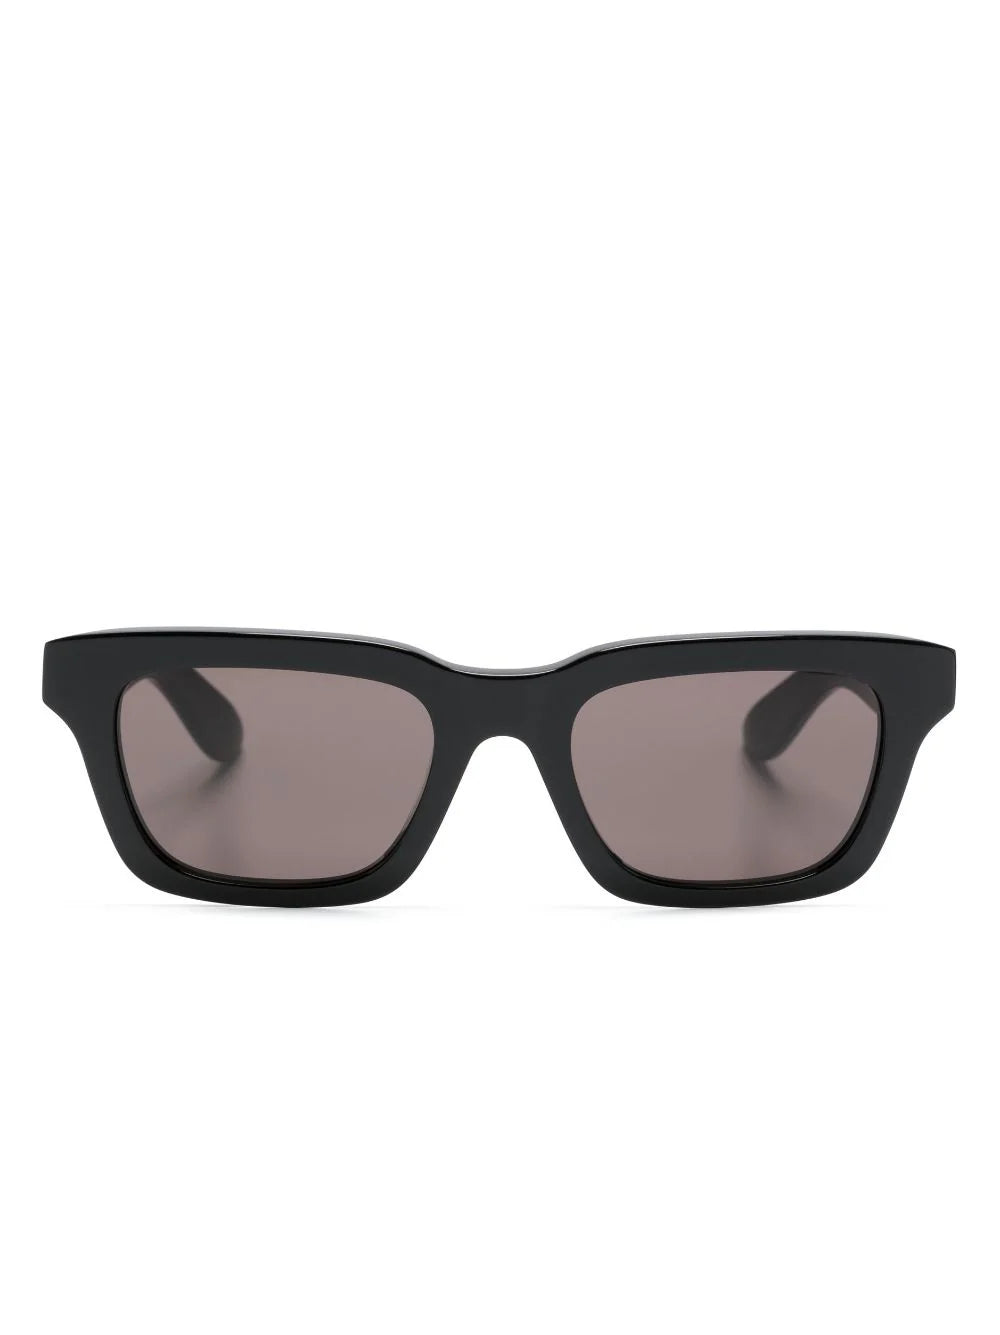 ALEXANDER MCQUEEN MEN Square Frame Sunglasses Black/Grey - MAISONDEFASHION.COM